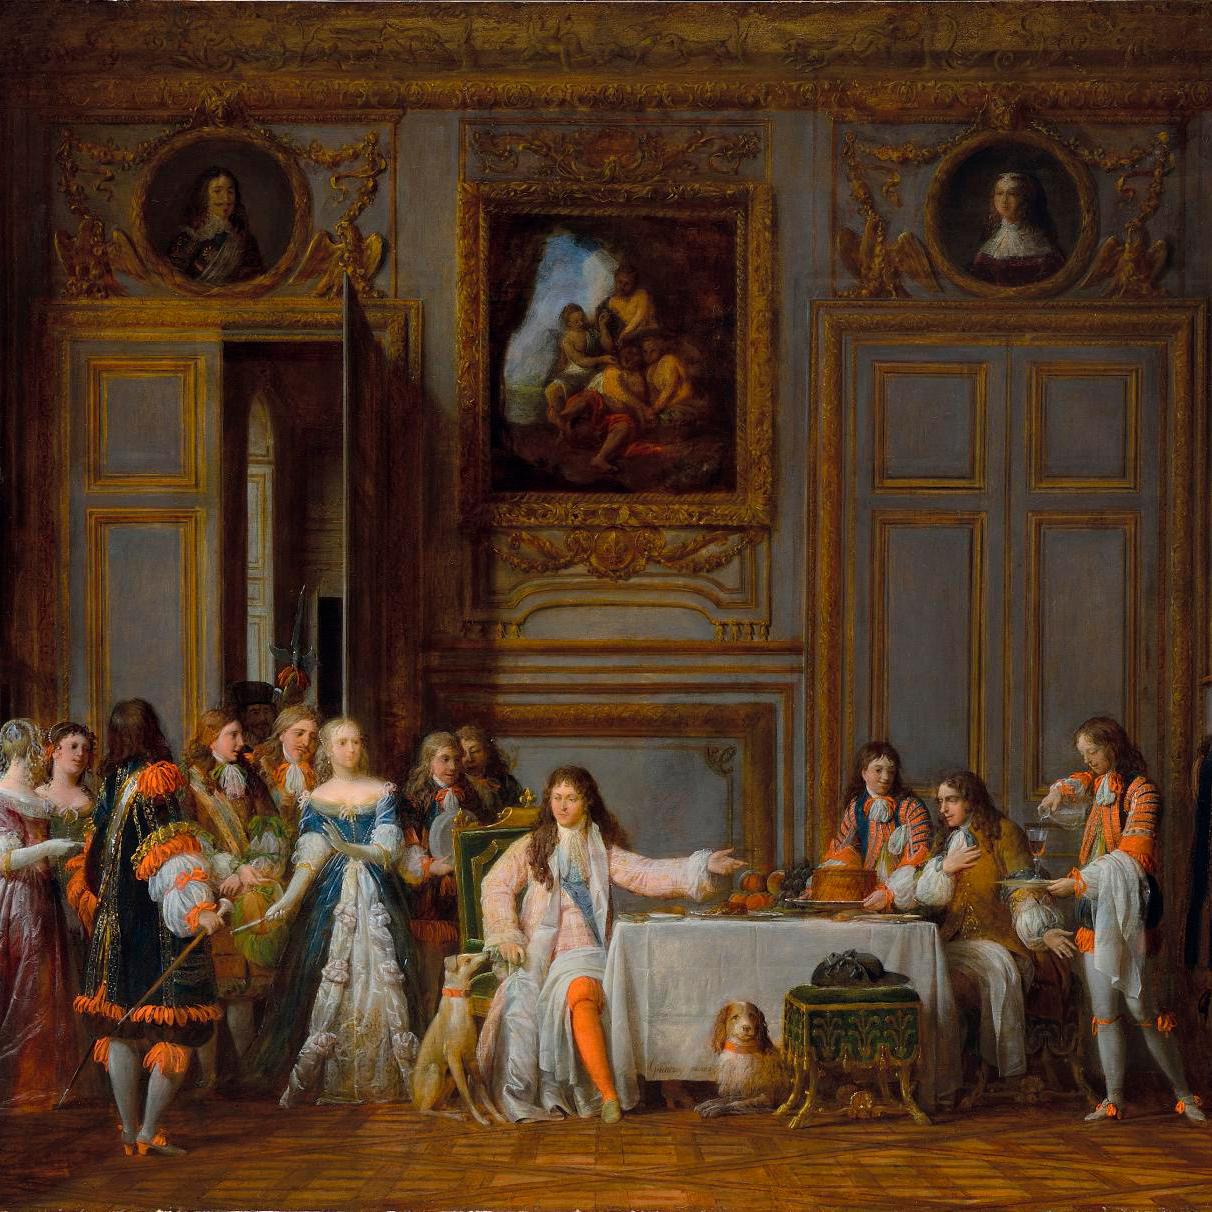 Molière, Preempted for the Comédie-Française - Lots sold